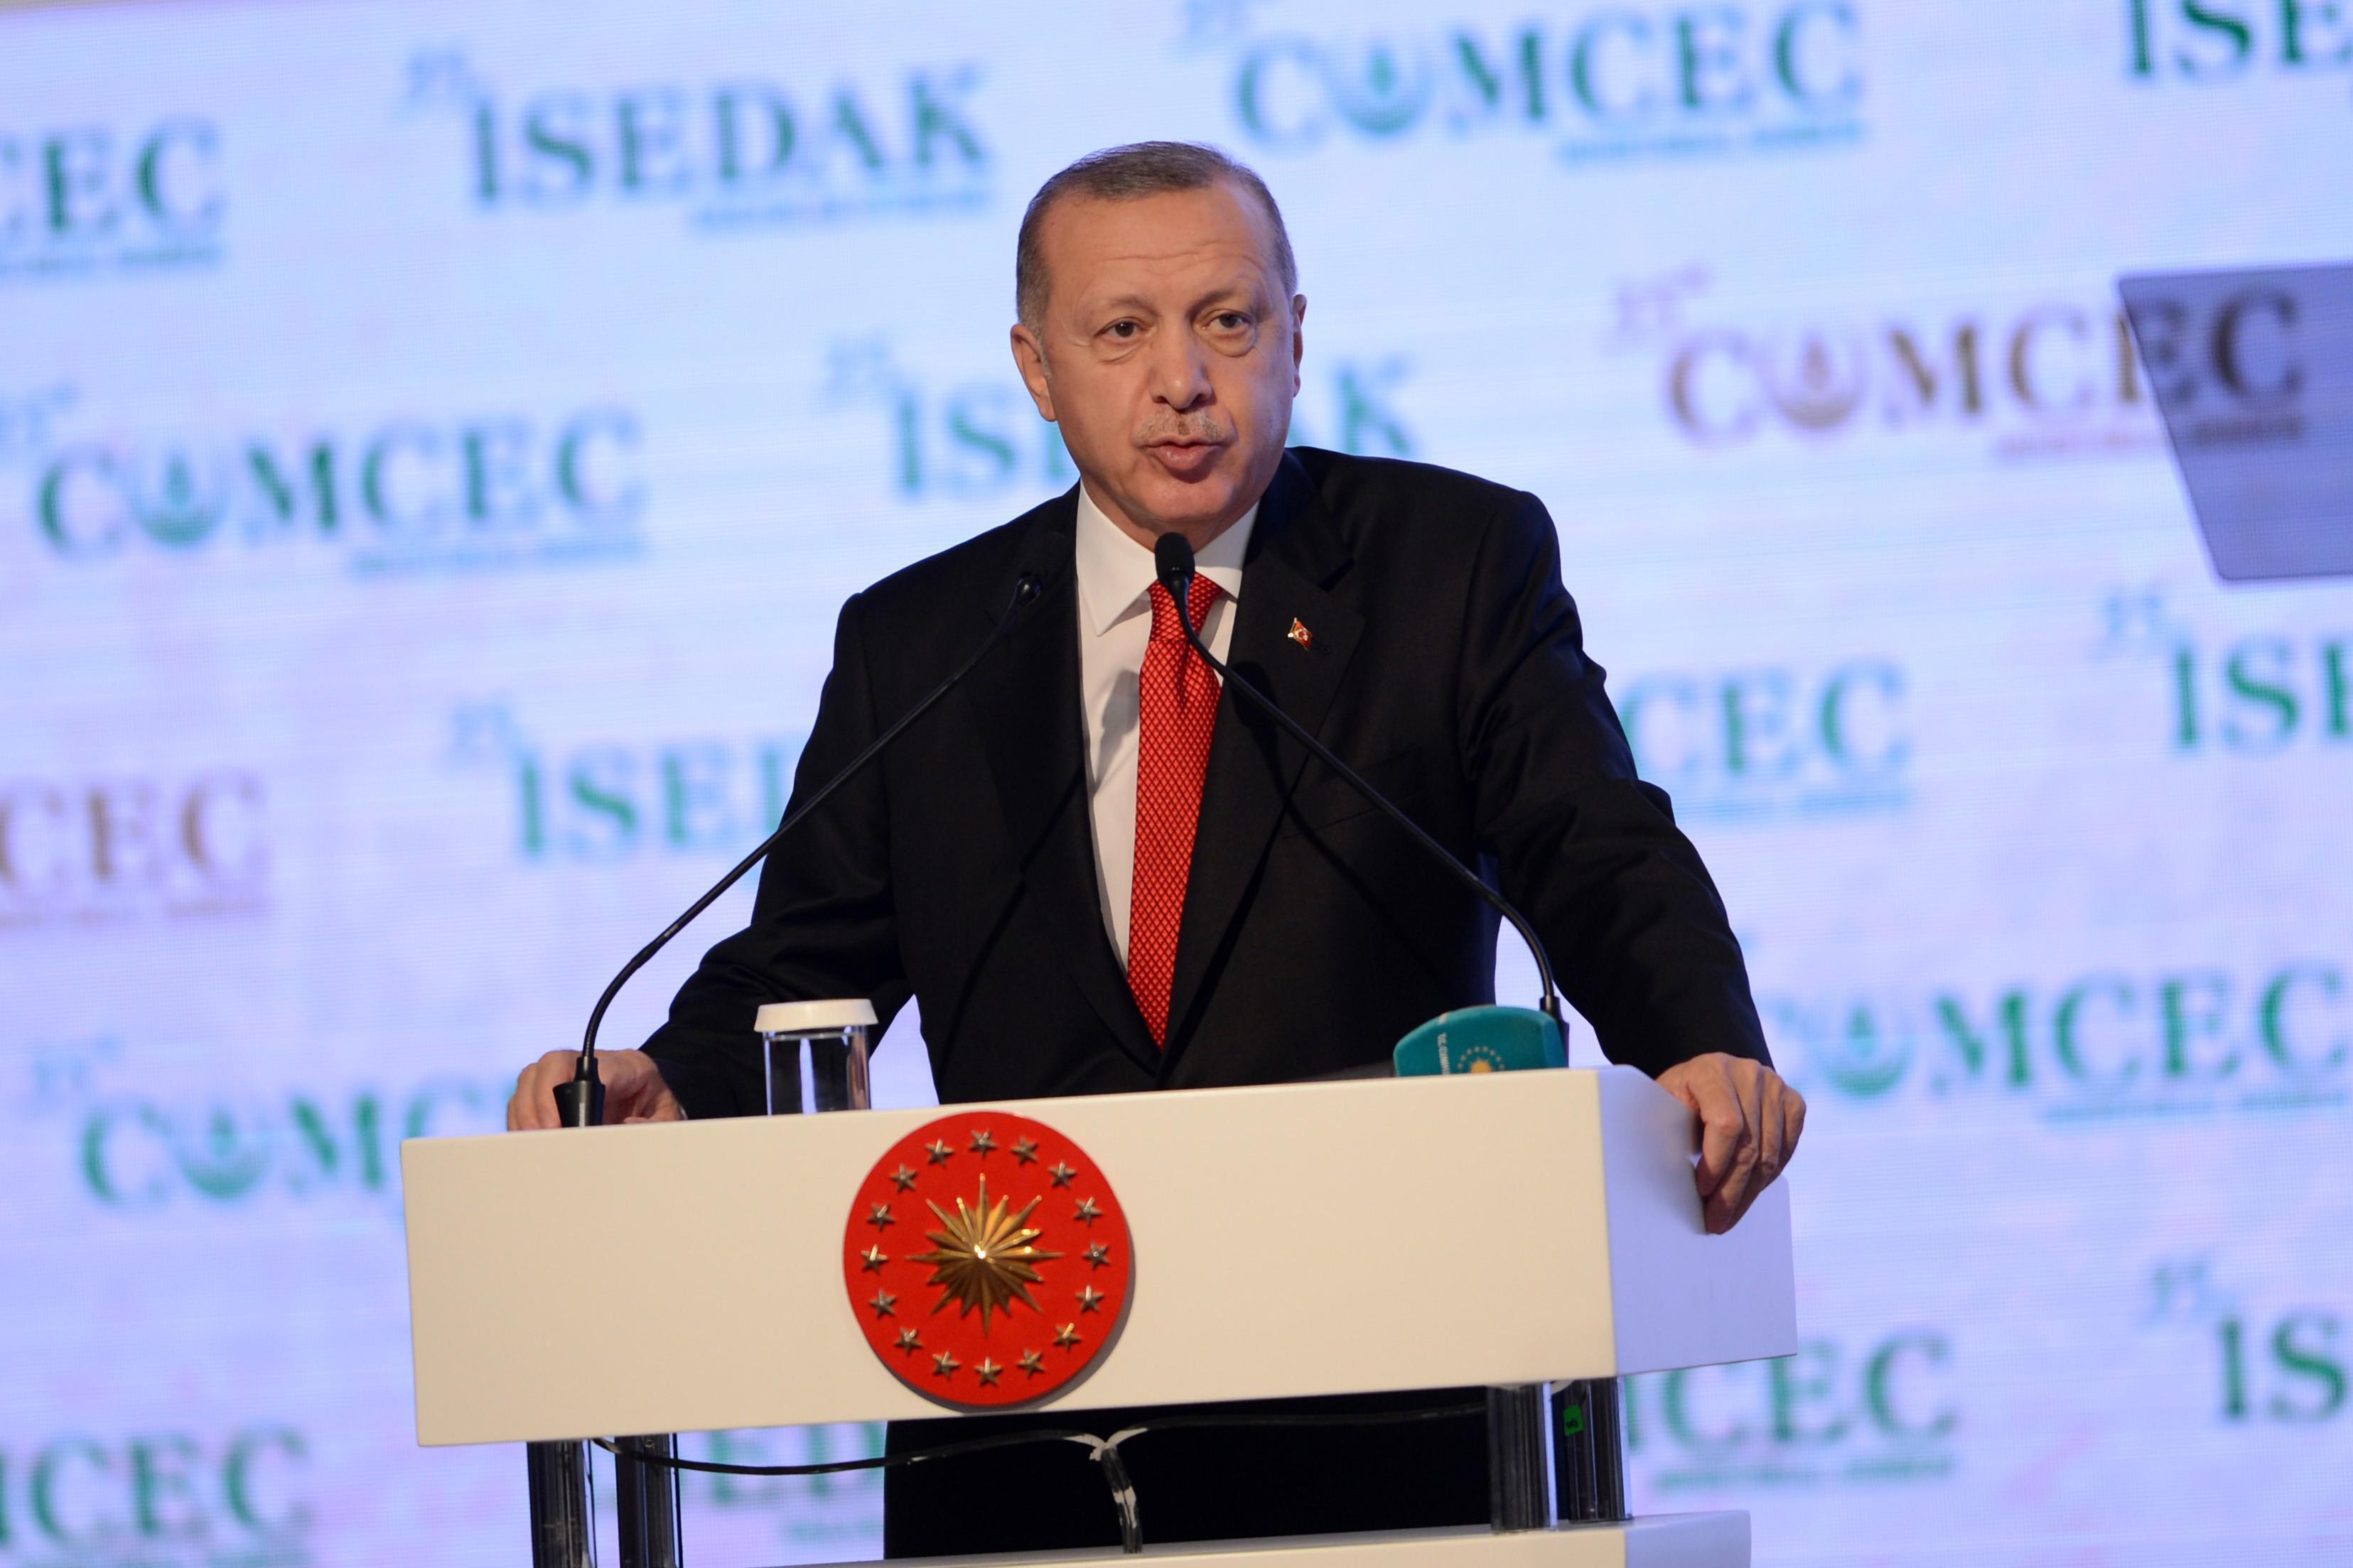 Cumhurbaşkanı Erdoğandan İSEDAK Toplantısında önemli açıklamalar